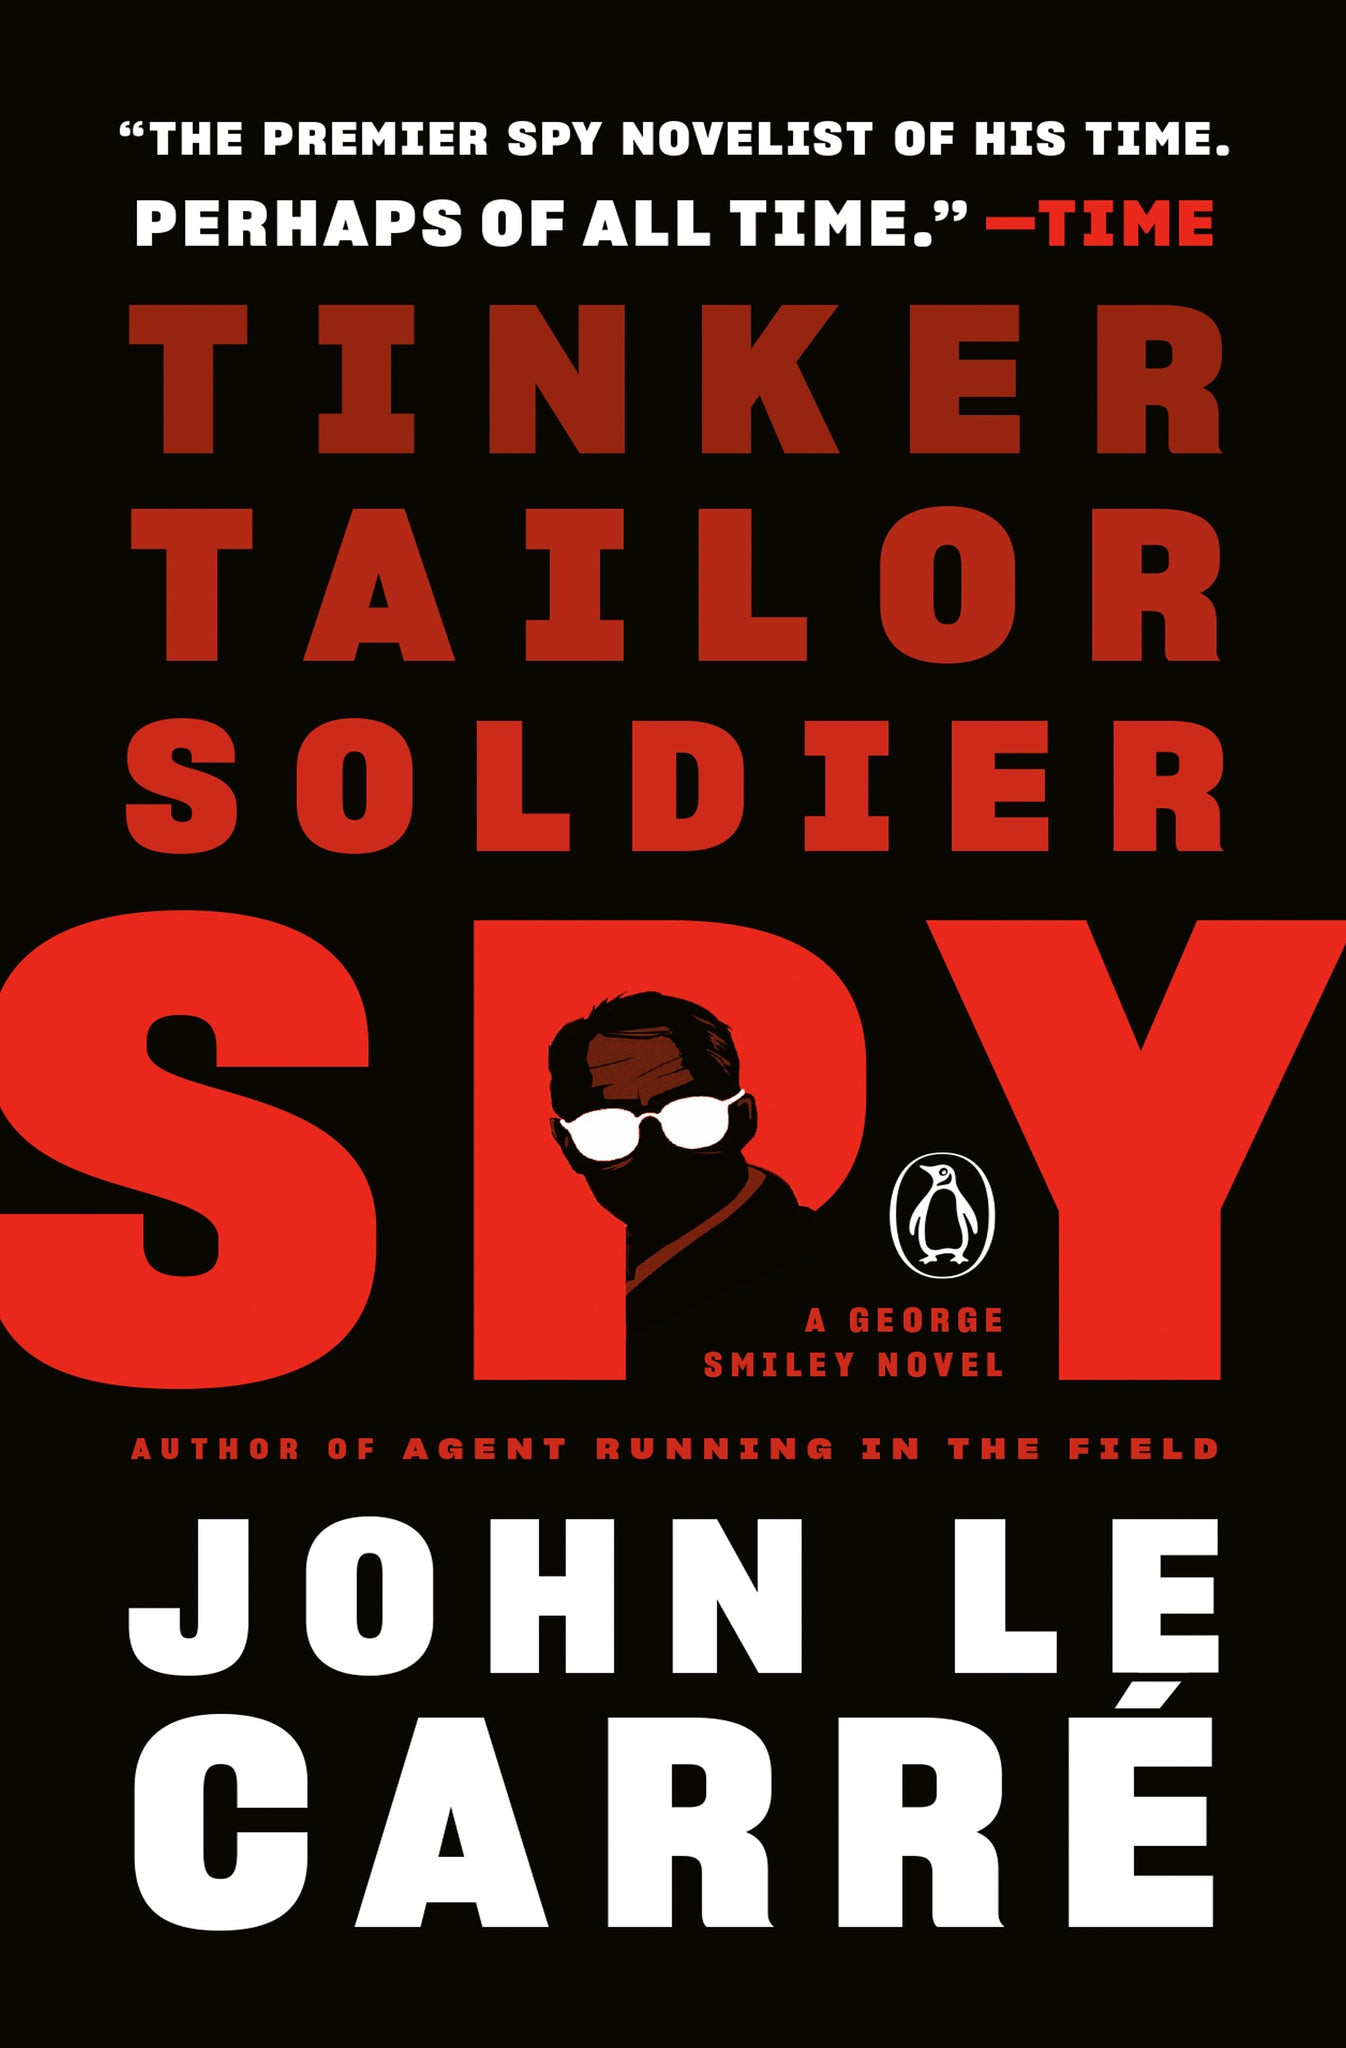 John le Carré - Tinker, Tailor, Soldier, Spy